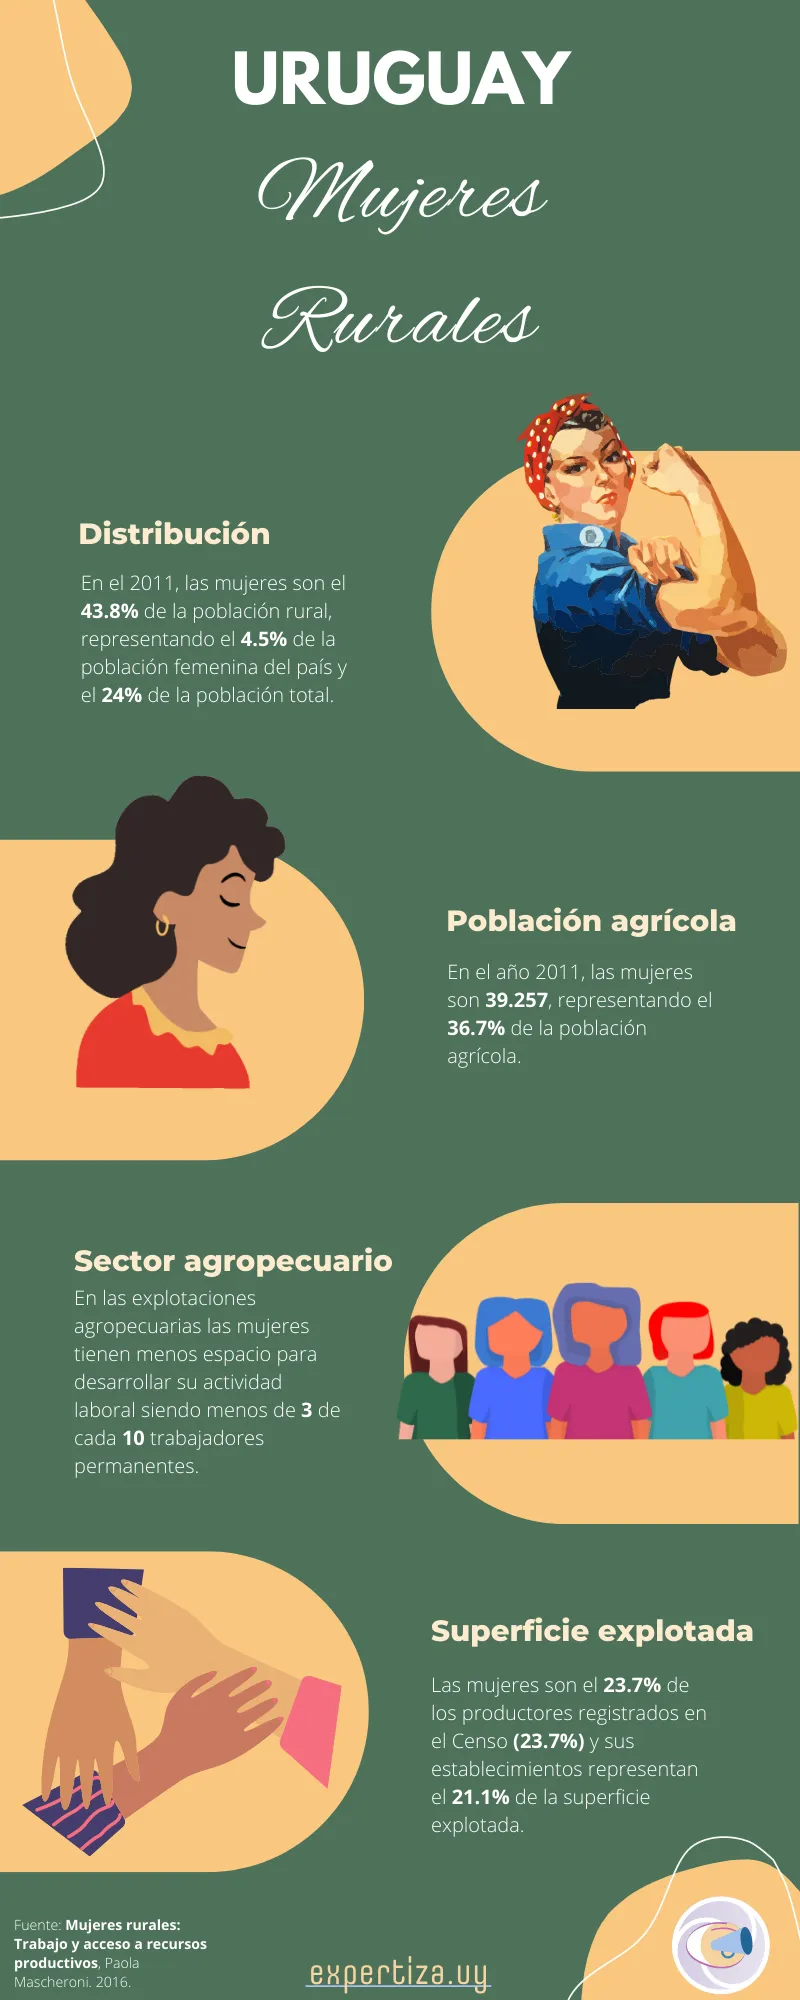 Infografía sobre la situación de las mujeres rurales en Uruguay.